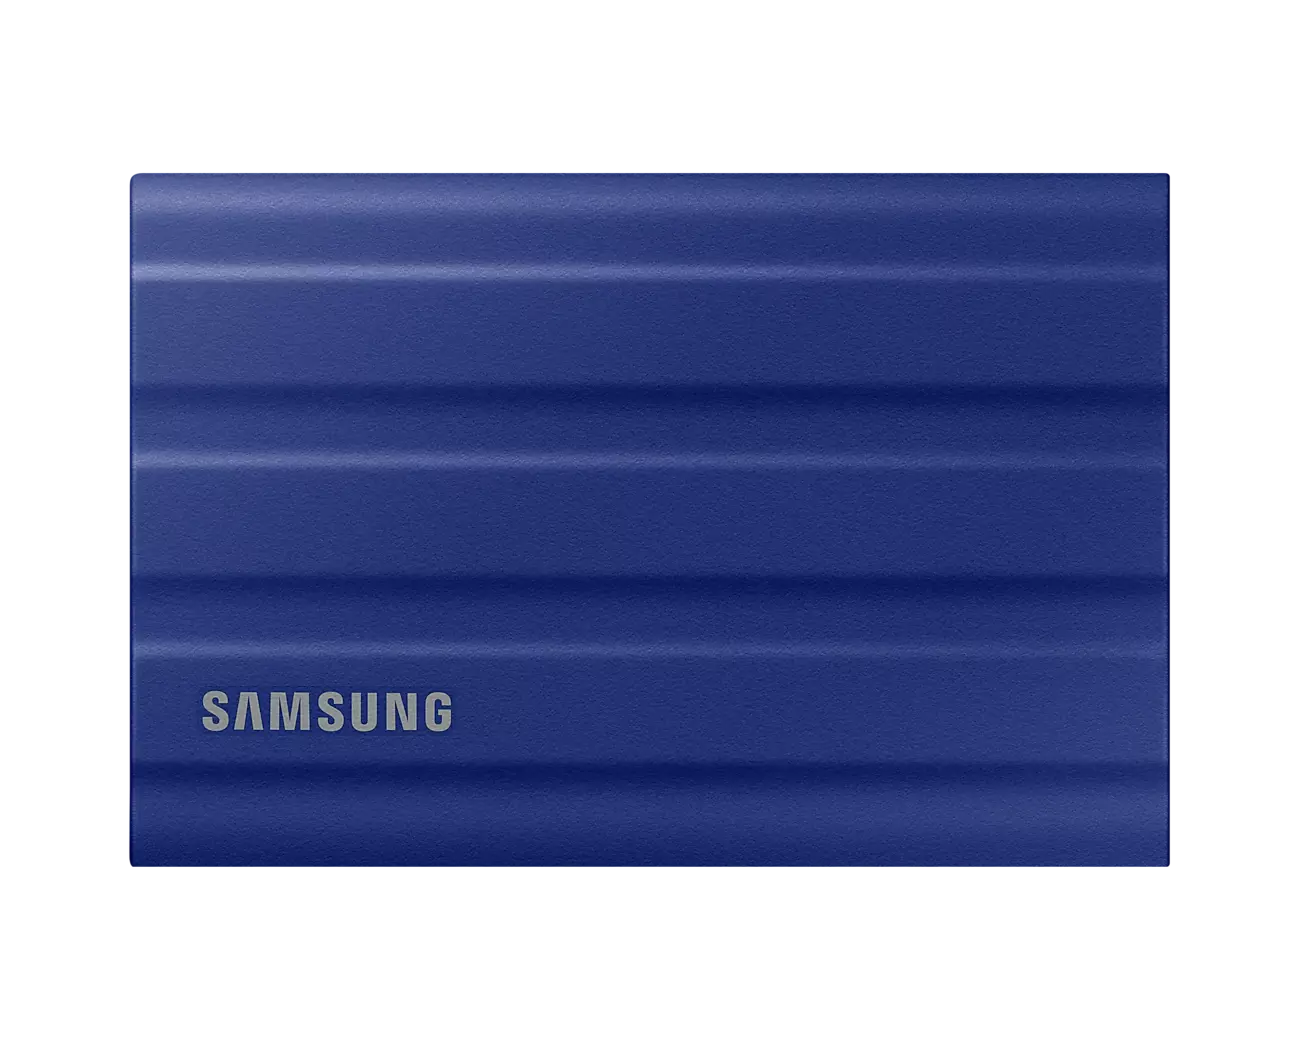 T shield. SSD Samsung t7 Shield. Samsung t7 Shield 2tb. SSD Samsung t7 scild. Samsung t7 Shield 2tb mu-.